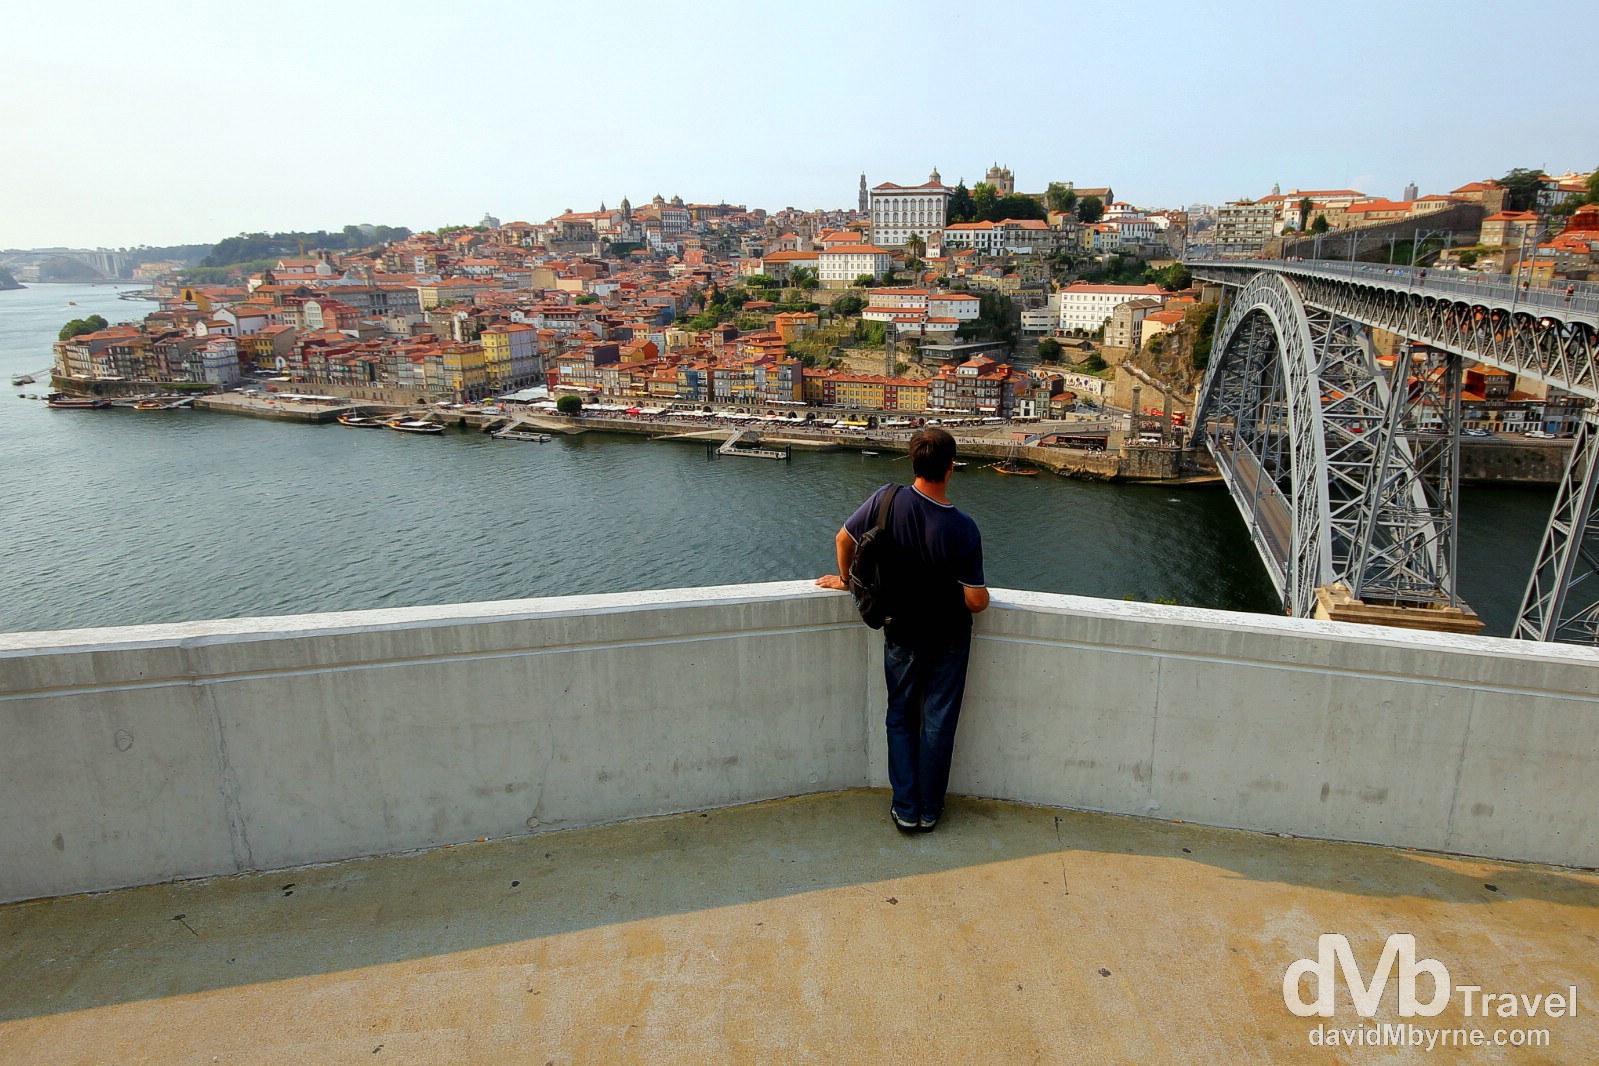 Viewing Porto & the Douro River from the Jardin do Morro, Porto, Portugal. August 28th 2013.